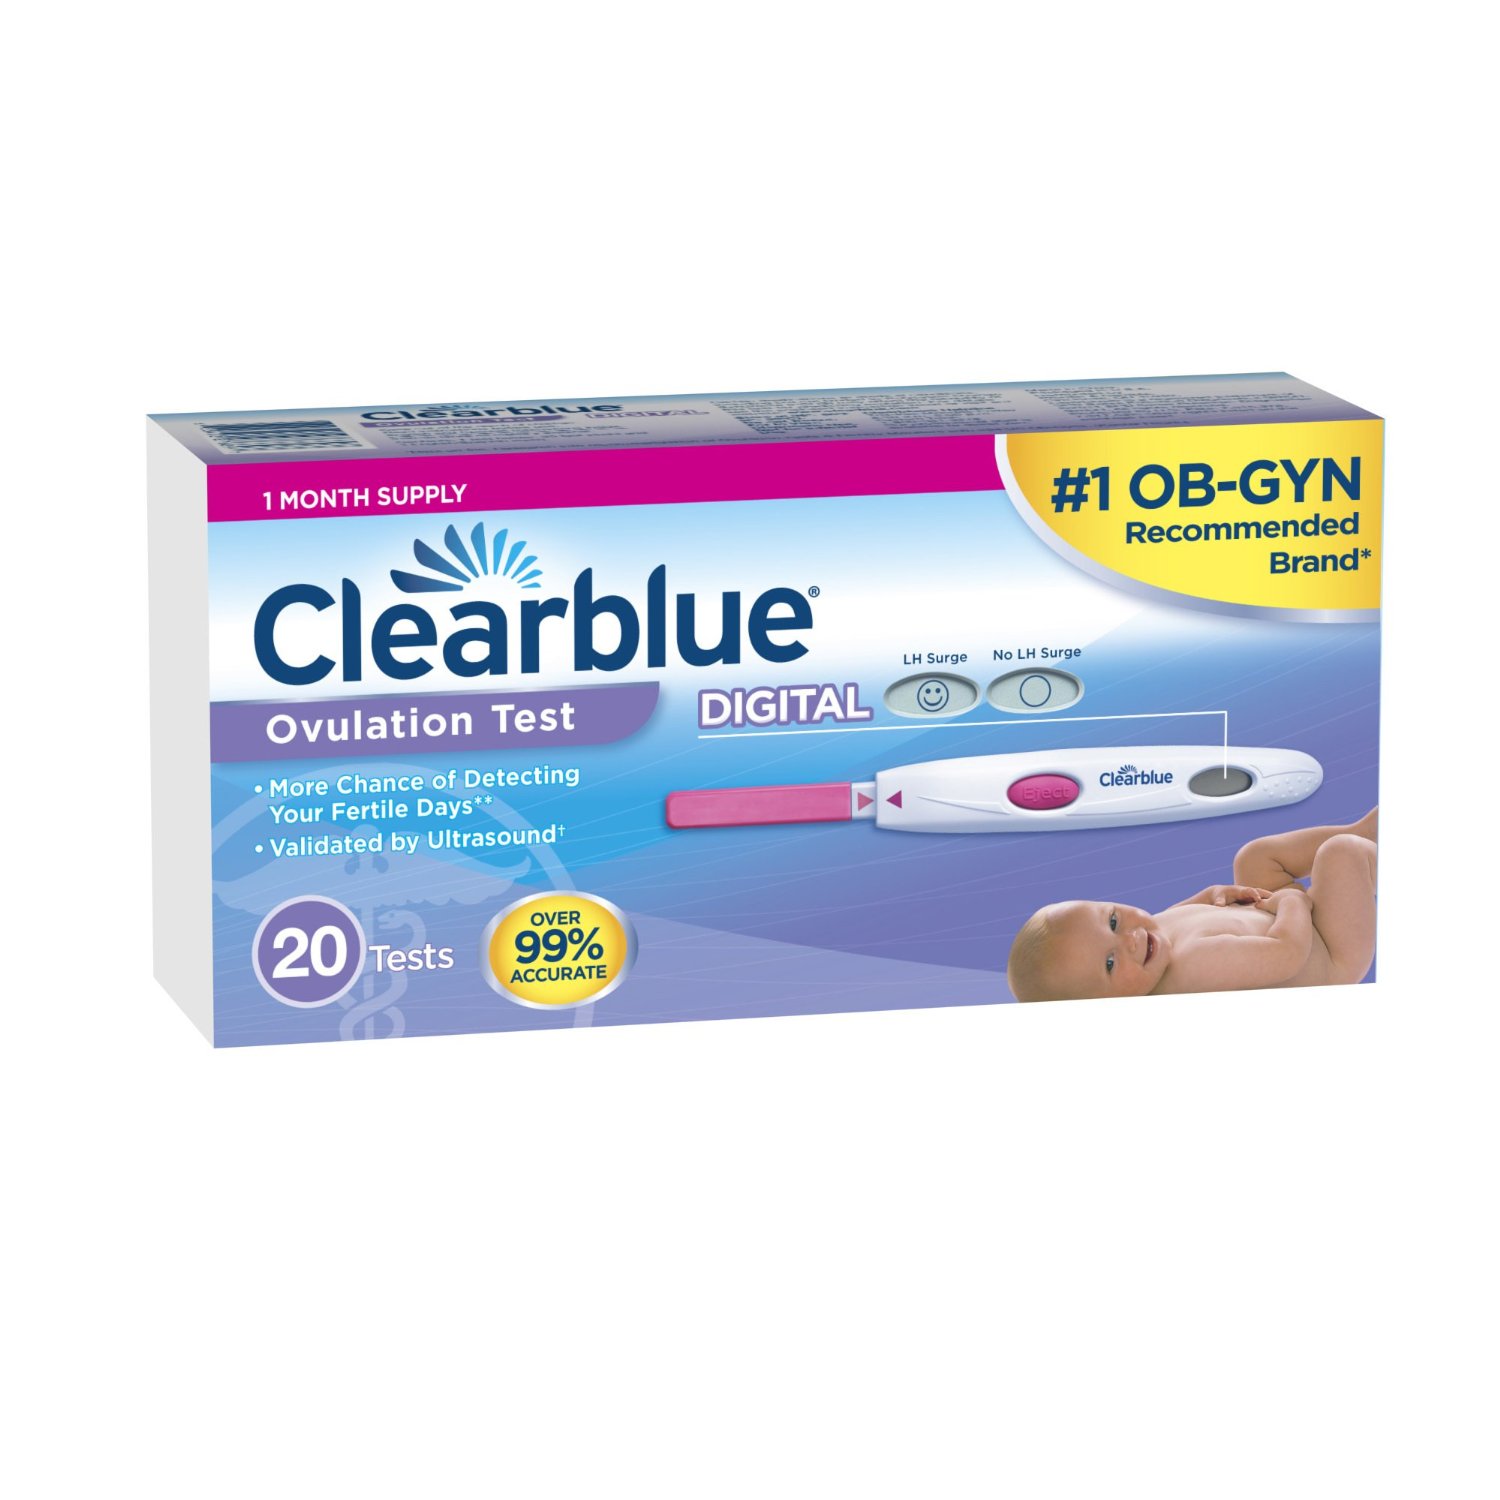 Тест клиаблу цифровой. Тест на овуляцию Clearblue. Тест Clearblue Digital на овуляцию. Тест на овуляцию Clearblue 7 шт. Цифровой тест на овуляцию Clearblue Digital.